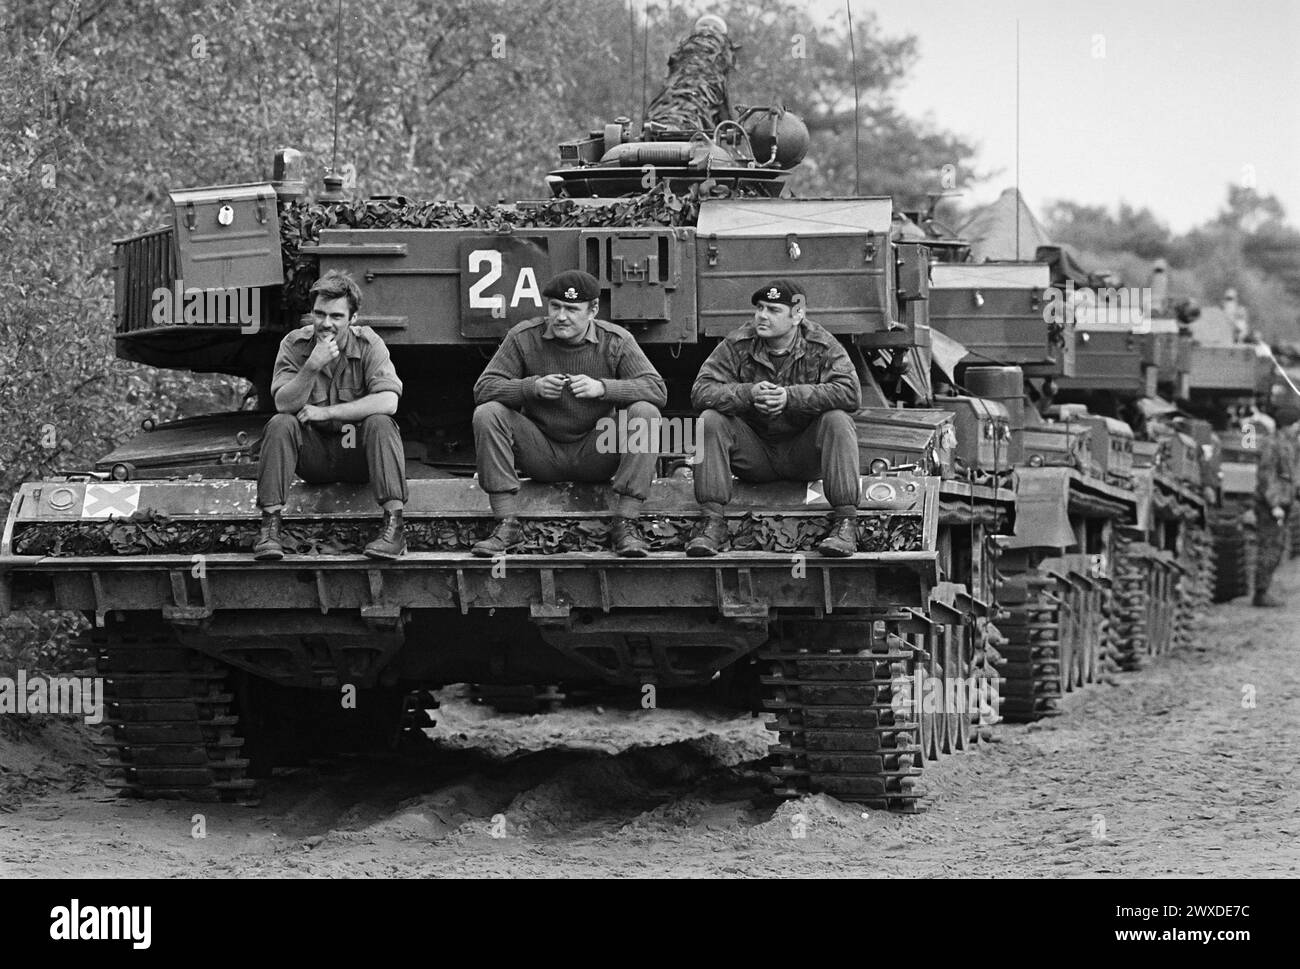 - NATO exercises in Germany, British Chieftain tank column (October 1983)   - esercitazioni NATO in Germania, colonna di carri armati inglesi Chieftain (ottobre 1983) Stock Photo